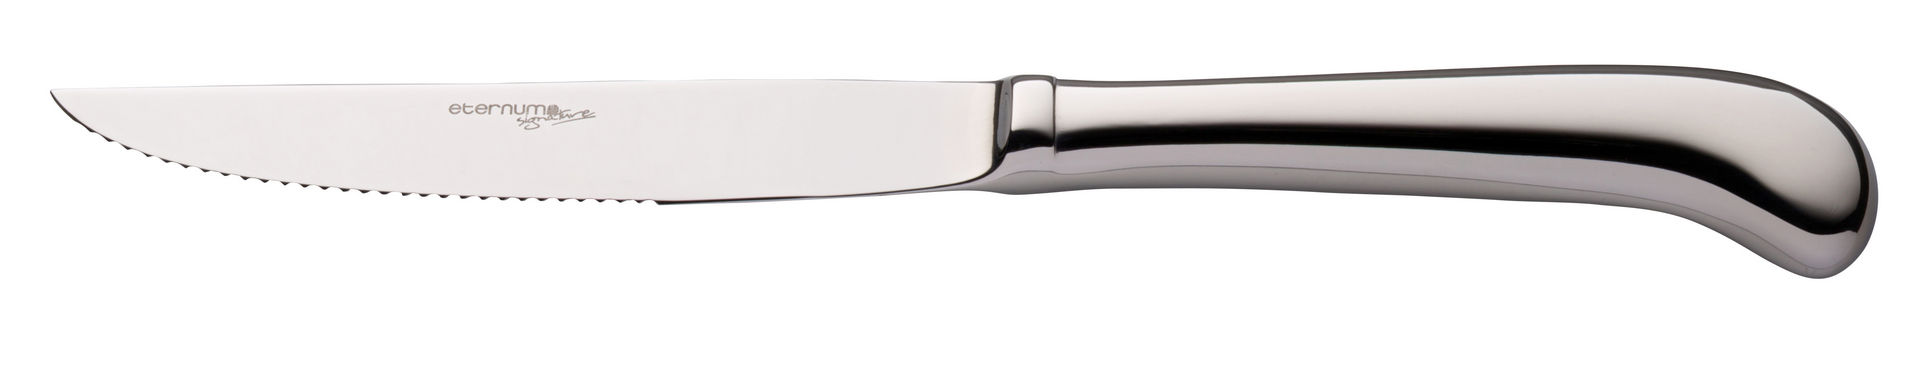 Pistol Steak Knife - F10670-000000-B01012 (Pack of 12)